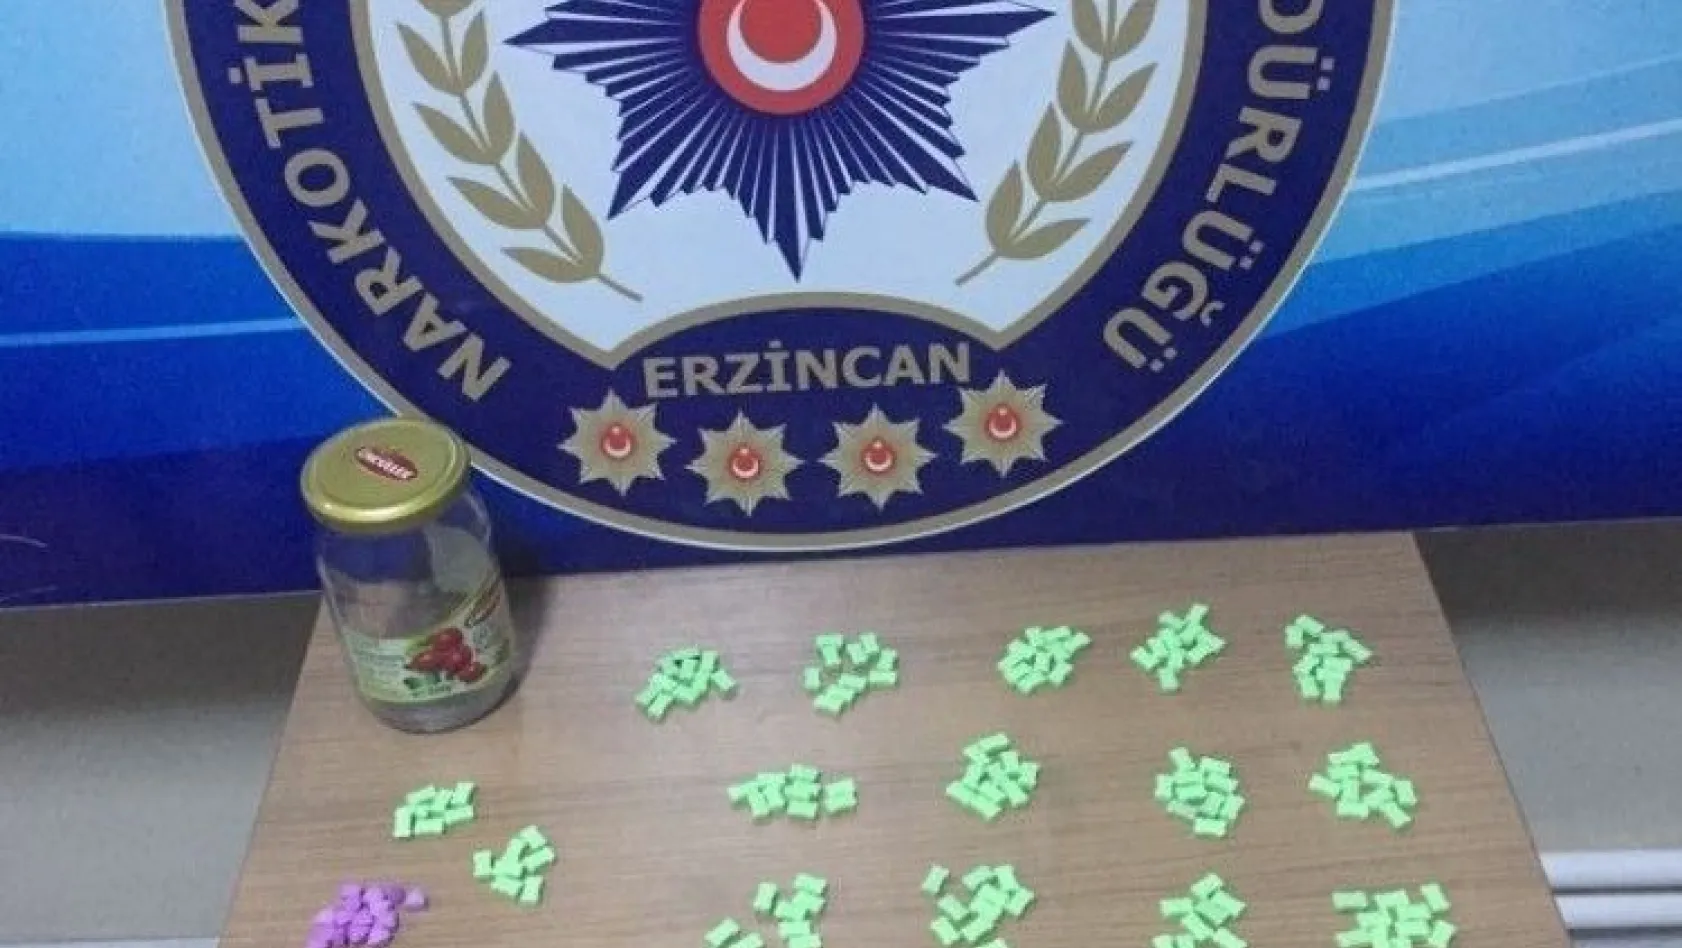 Erzincan'da 286 adet ecstasy hap ele geçirildi
